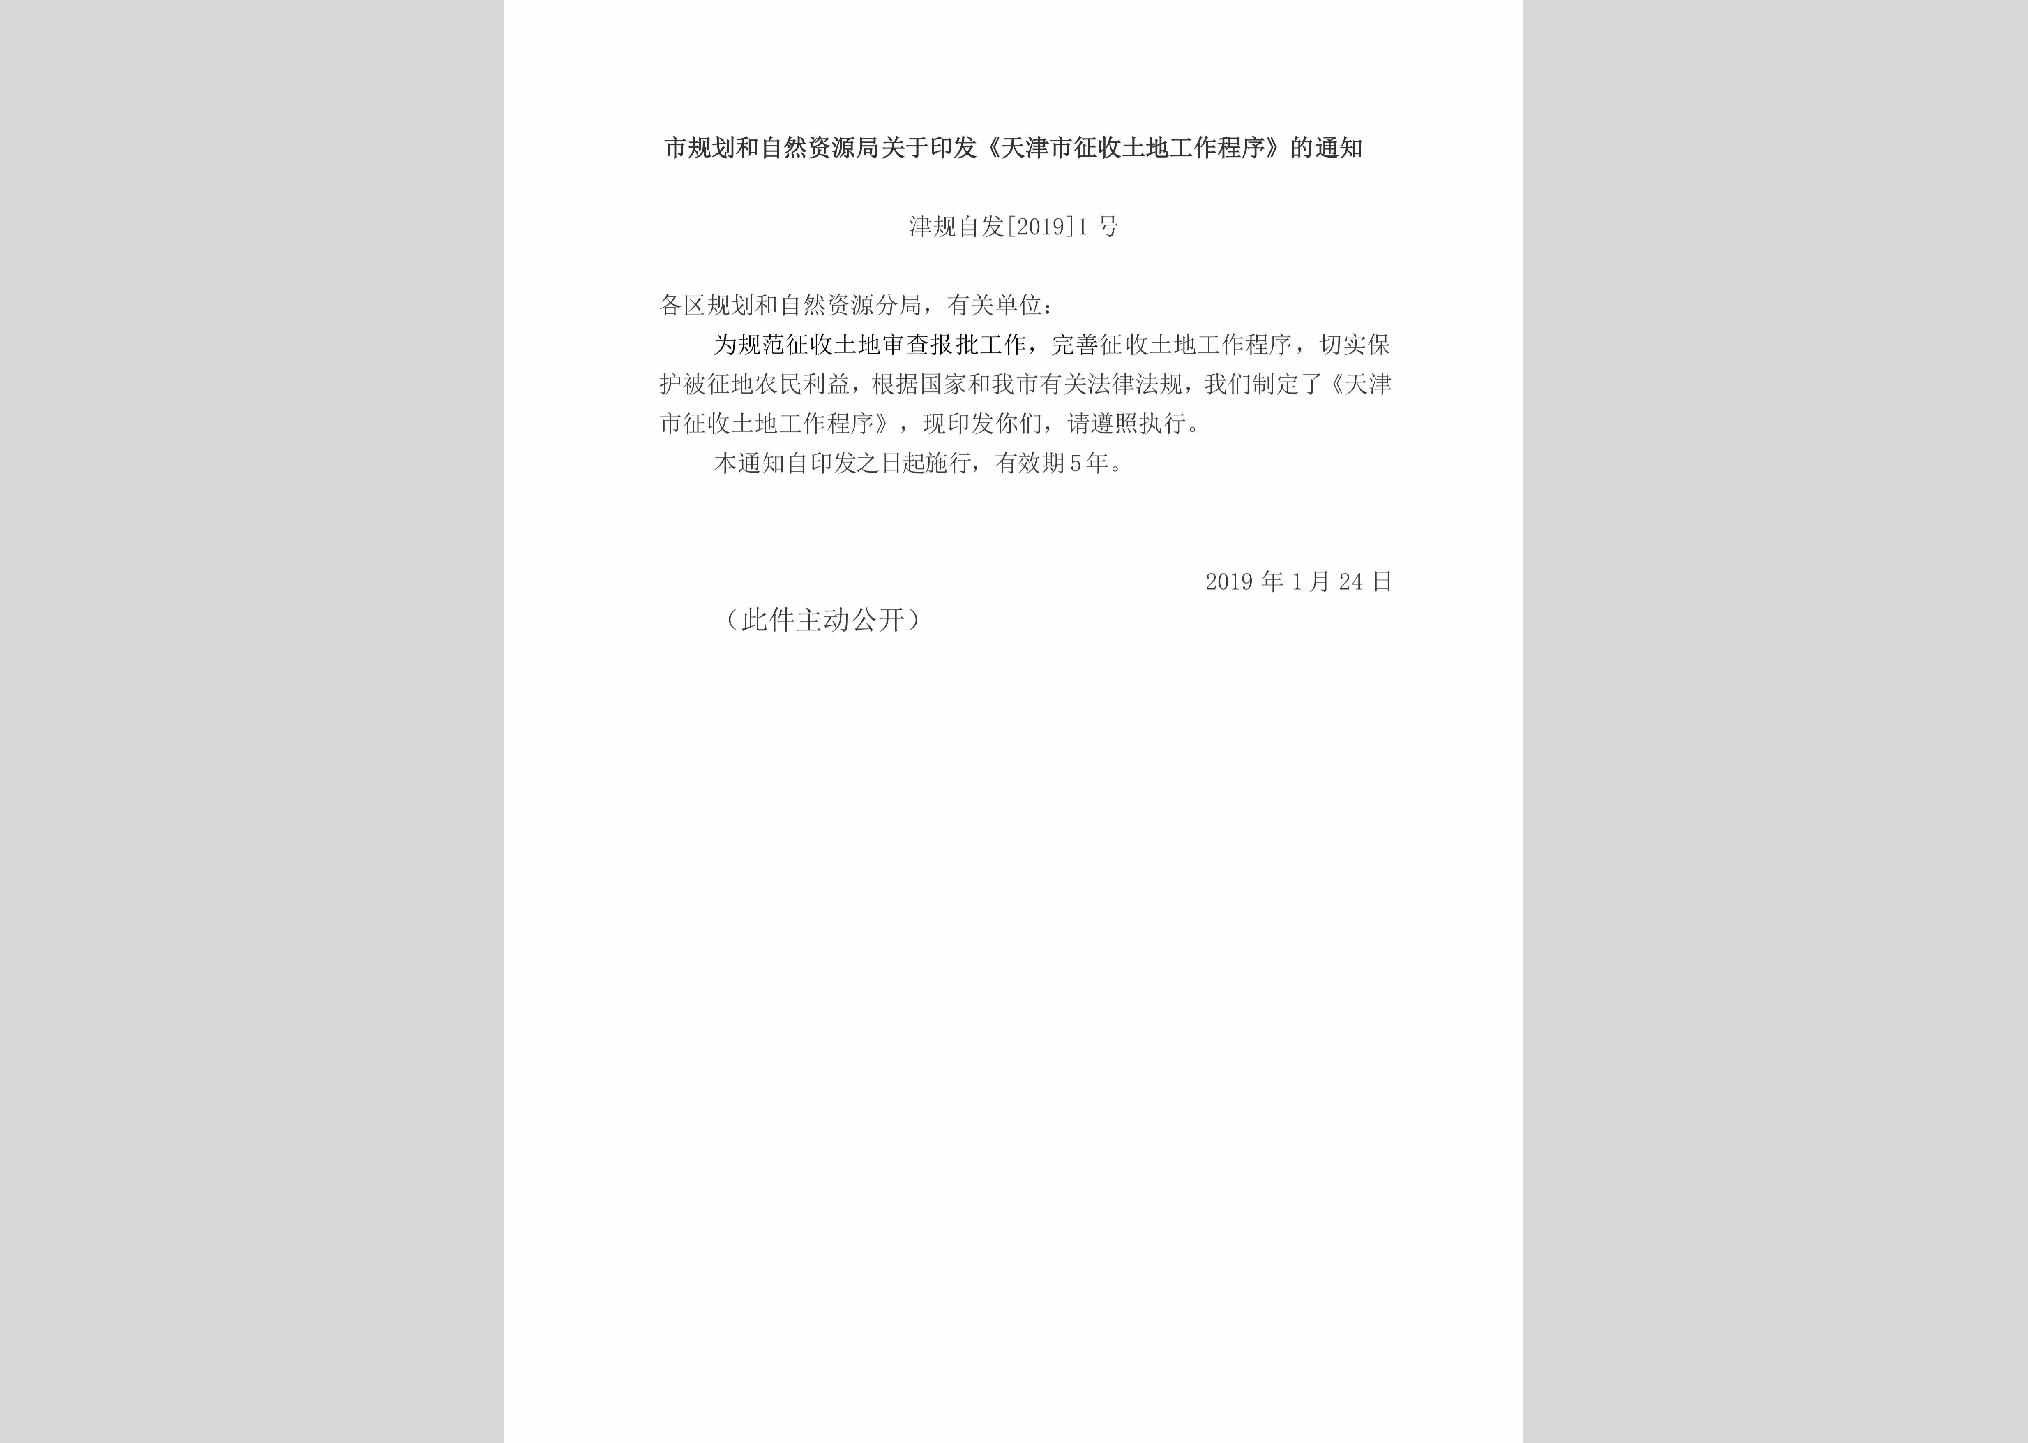 津规自发[2019]1号：市规划和自然资源局关于印发《天津市征收土地工作程序》的通知